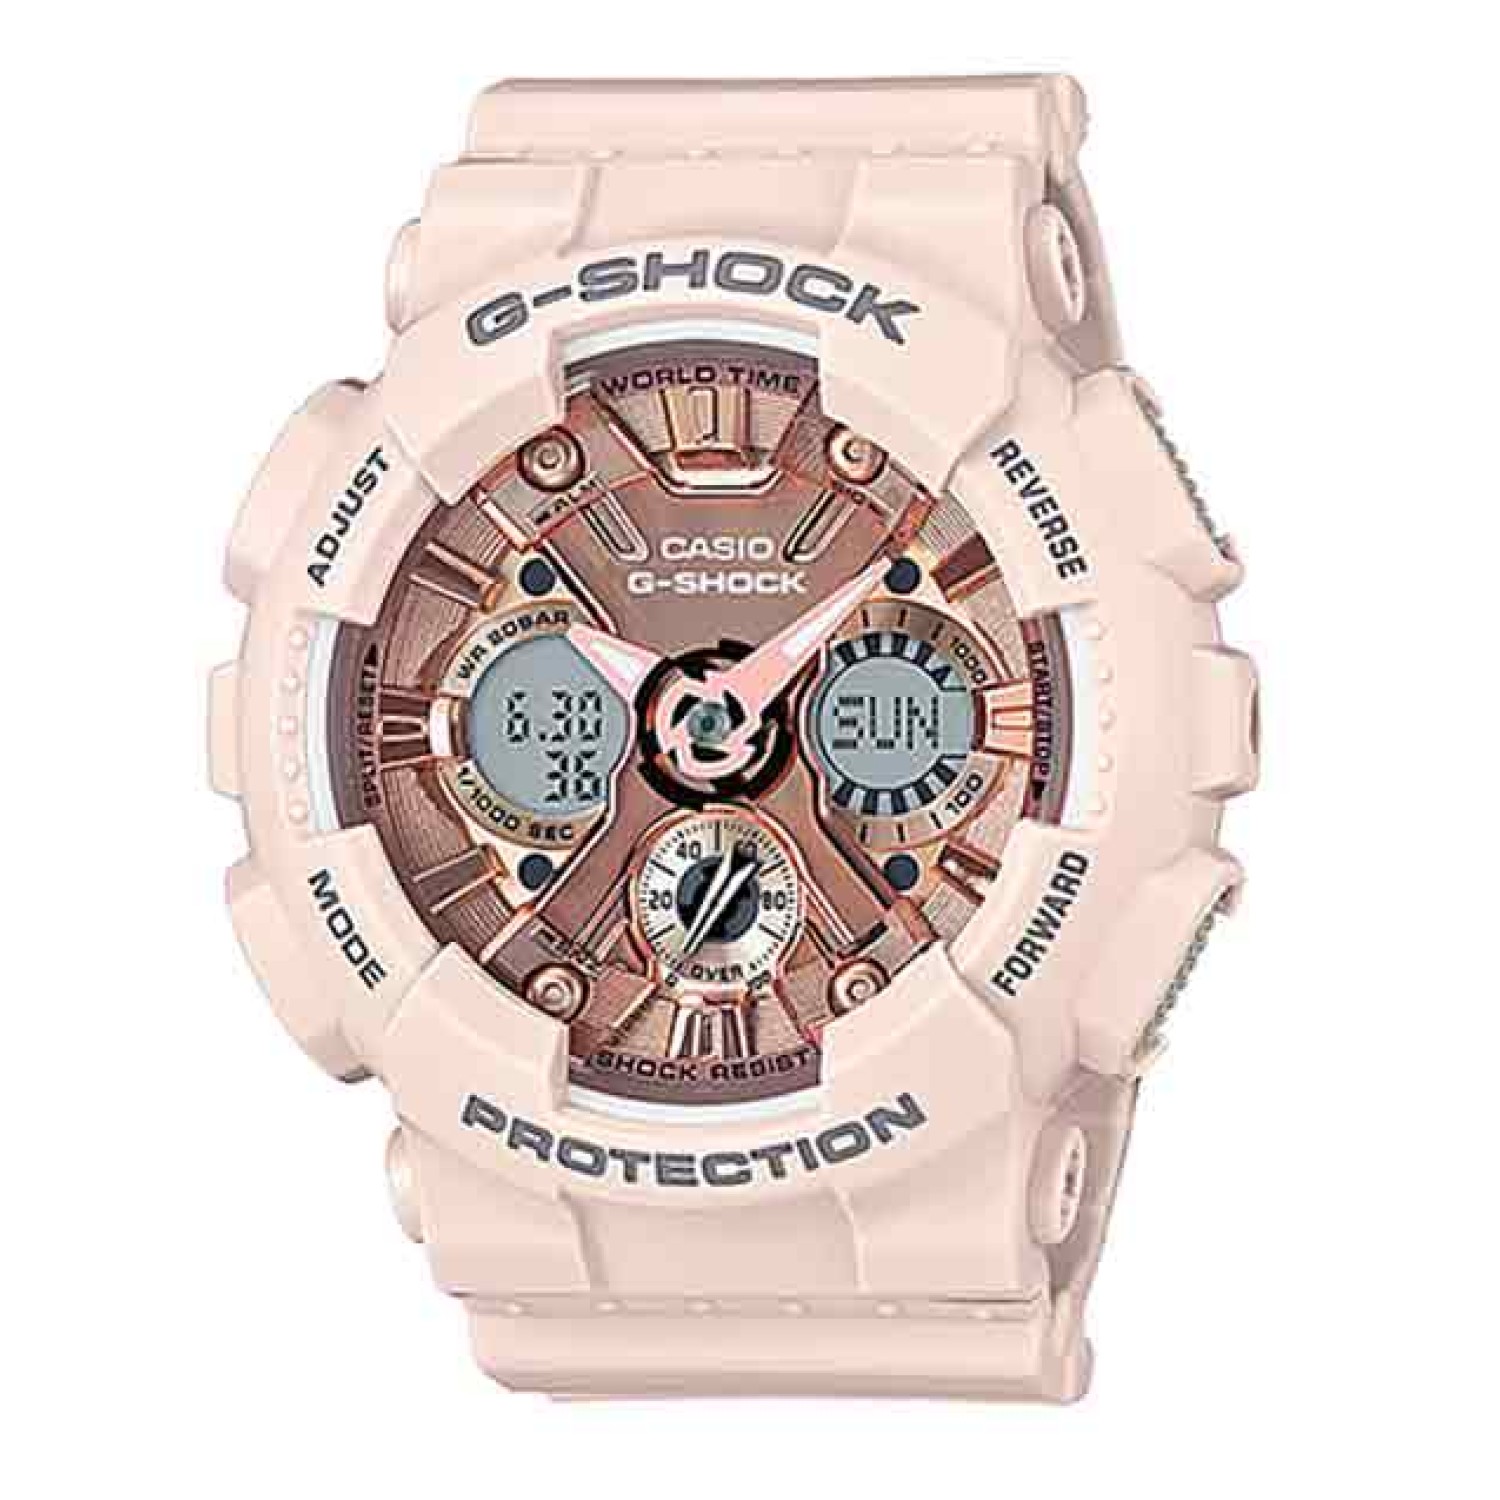 GMAS120MF-4A Casio G-SHOCK S-Series Watch.casio watches nz sale $299.00